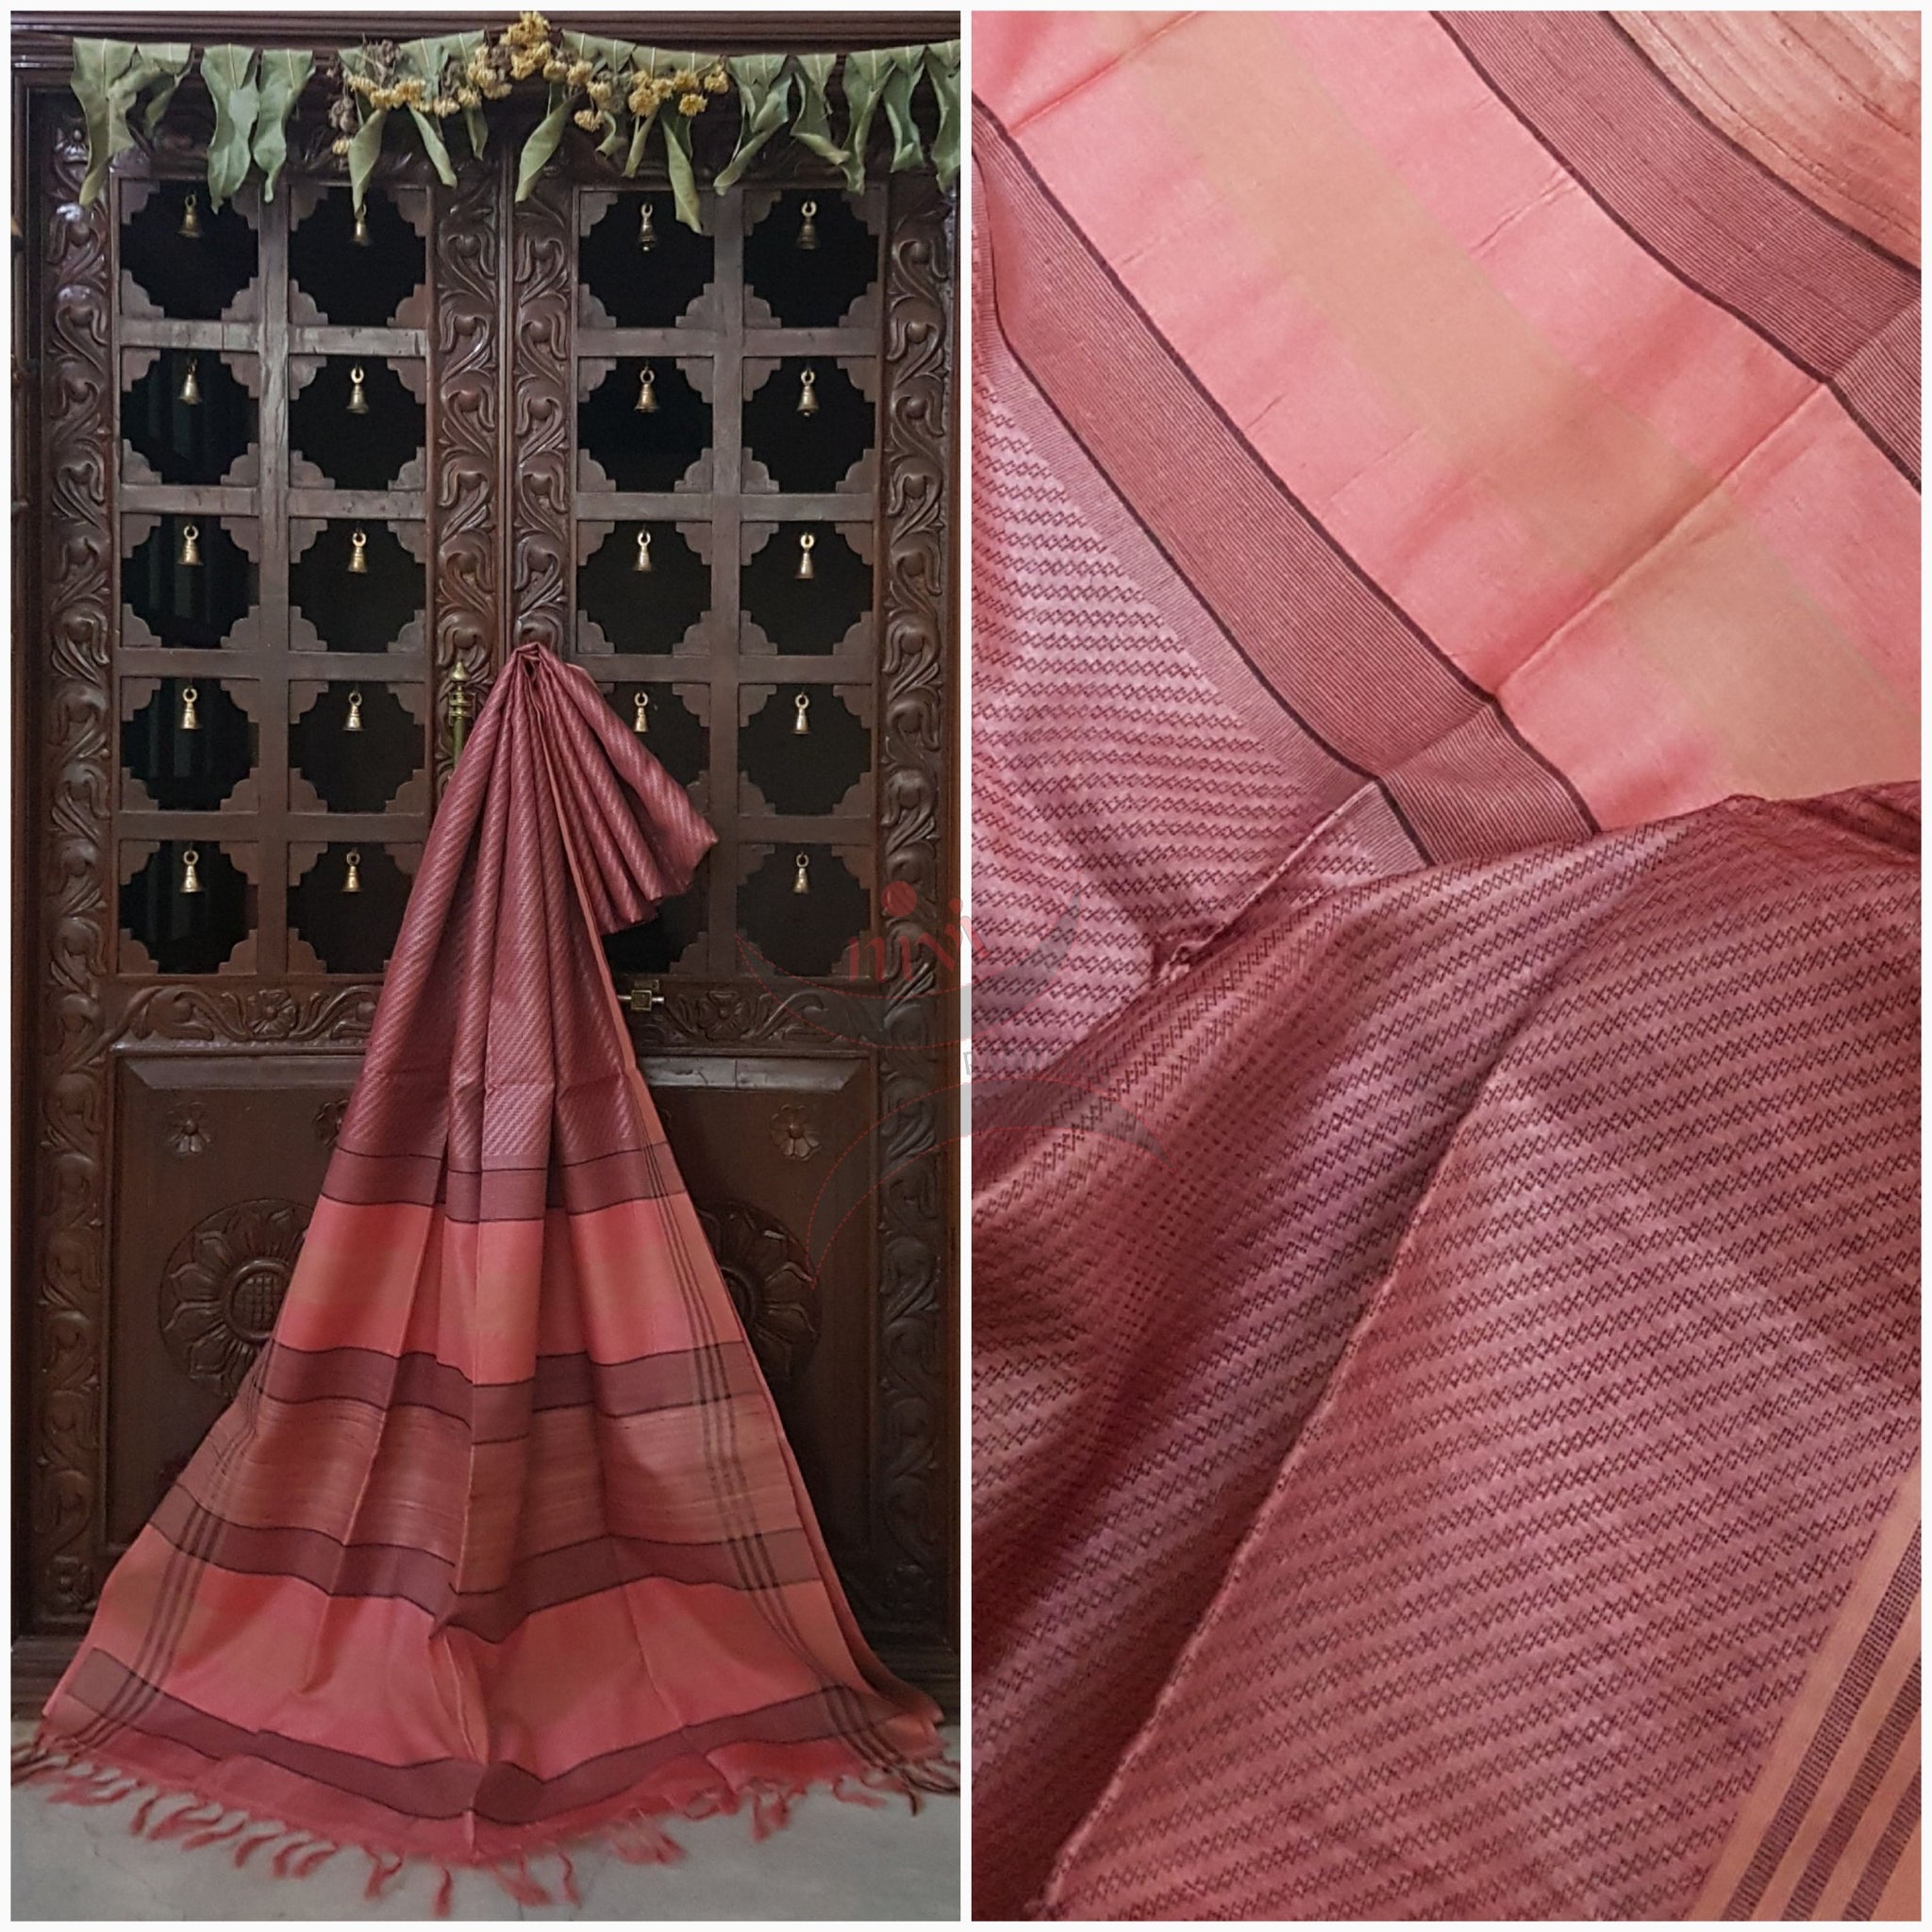 Peach handloom bhagalpur silk tussar with geecha pallu and plain blouse matching pallu.